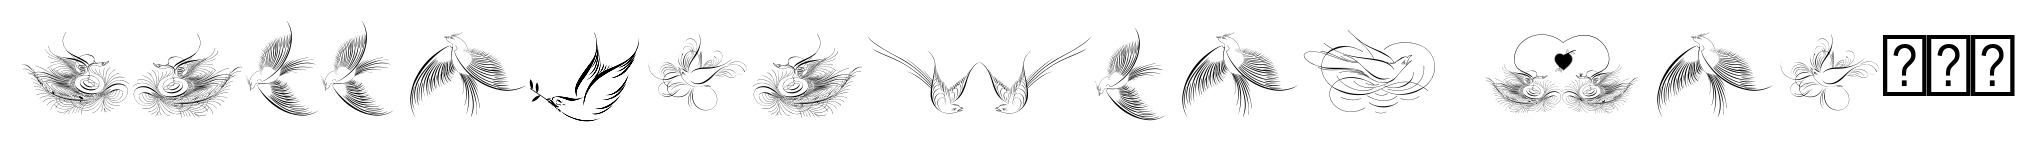 Calligraphic Birds Two image